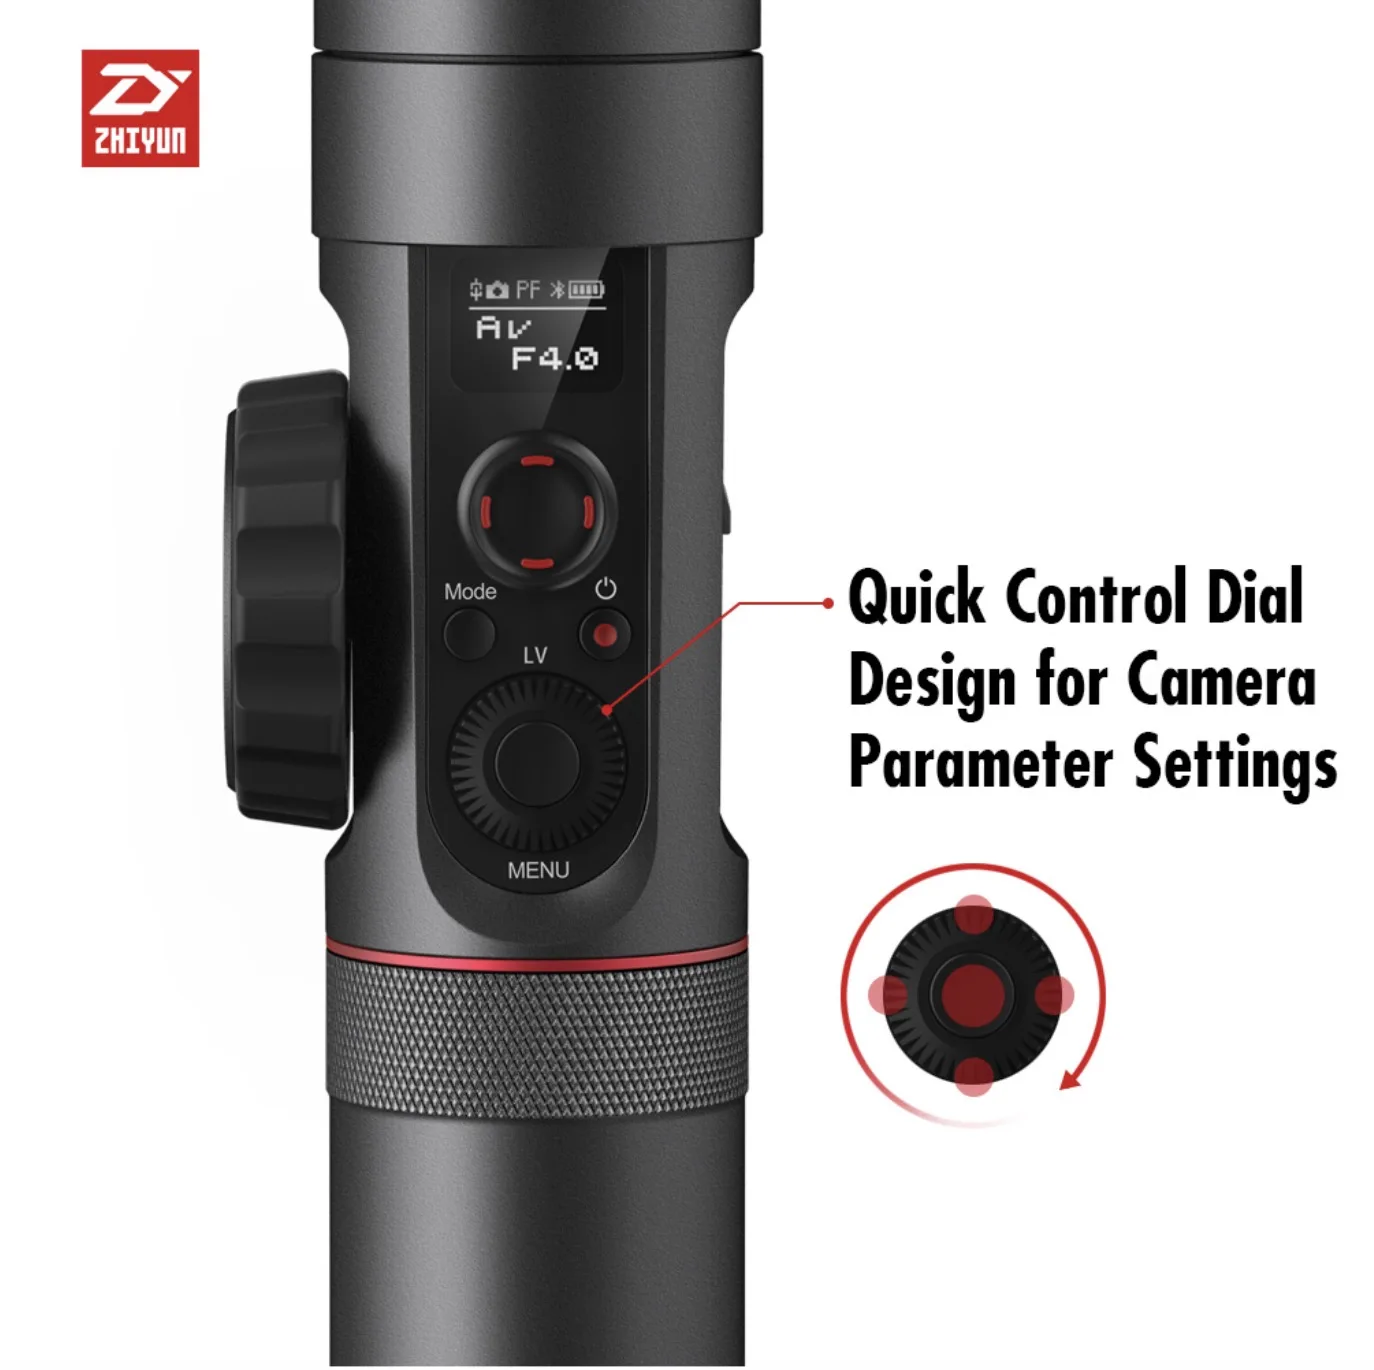 Zhiyun Чжи Юн официальный кран 2 стабилизатор Gimbal для всех DSLR Камера s с последующей фокусировки штатив Камера Управление кабель